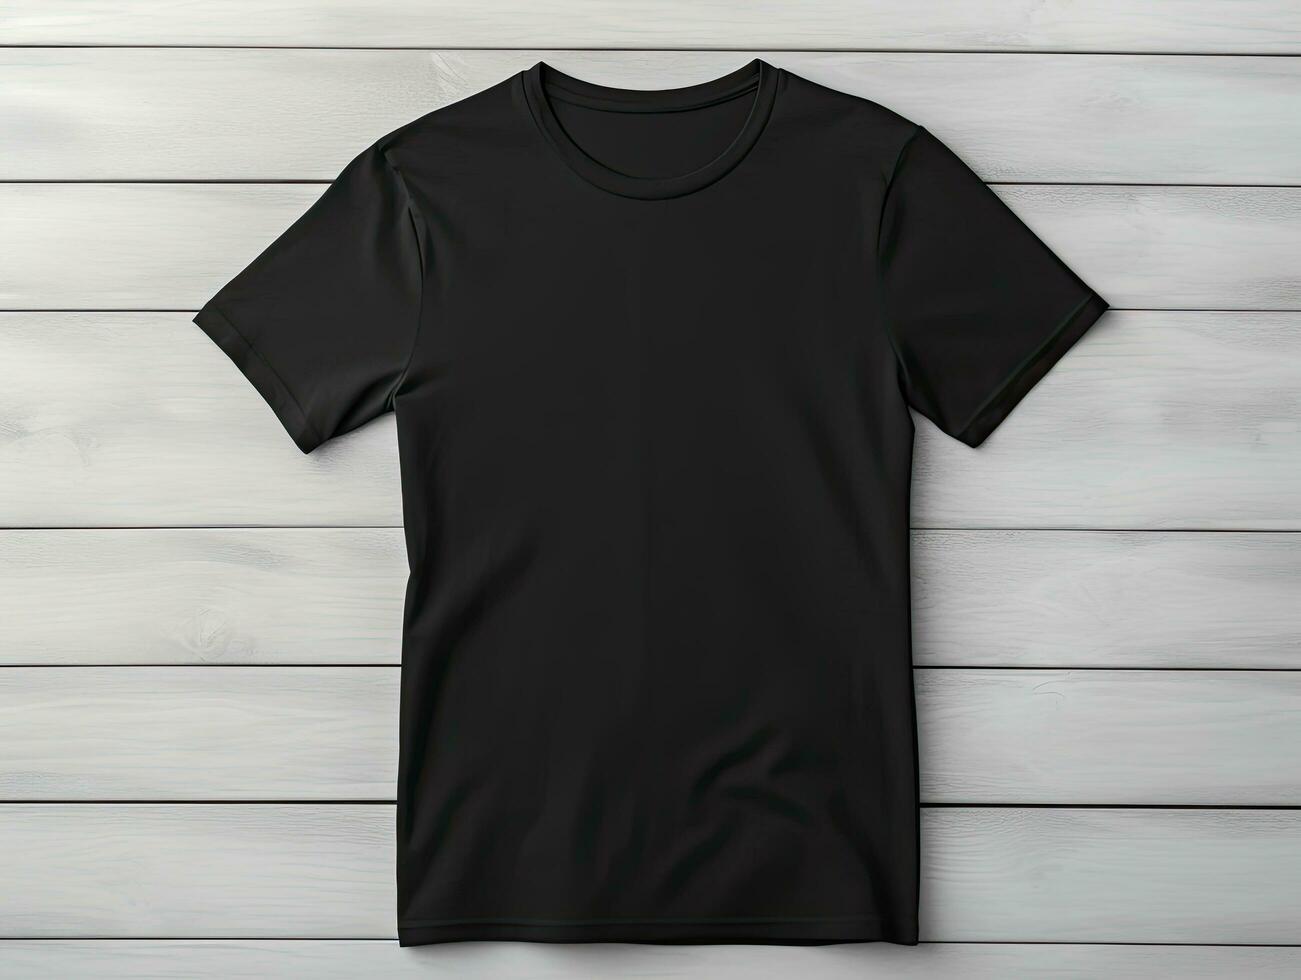 Produkt spotten oben Design von ein leer schwarz T-Shirt auf ein Weiß hölzern Hintergrund foto